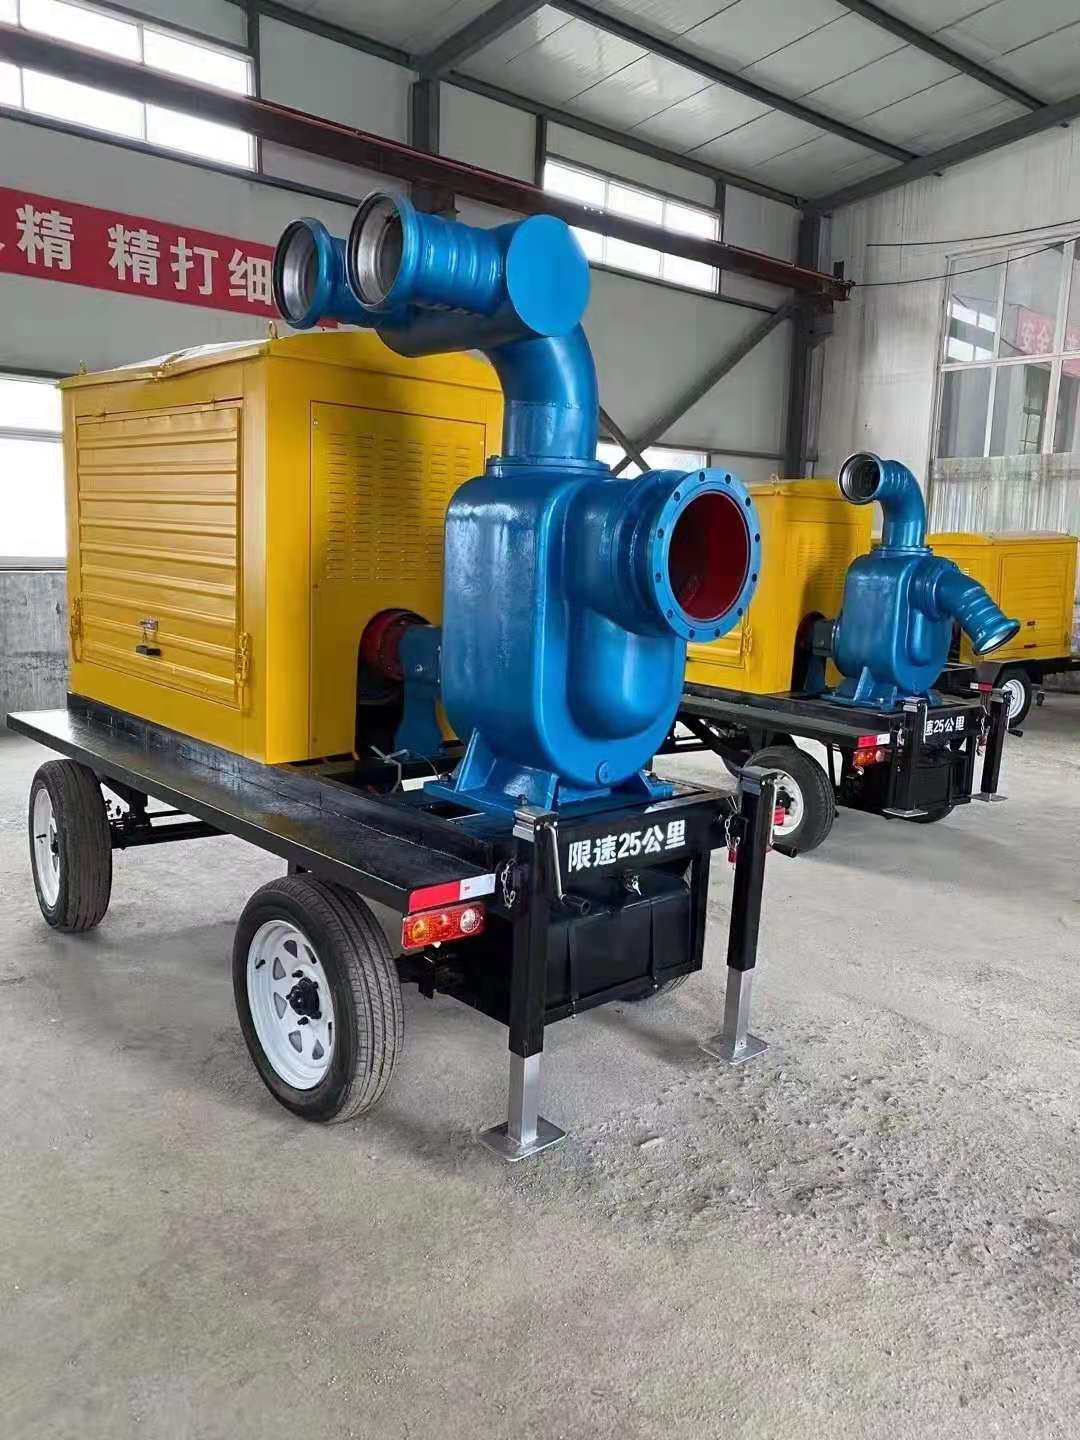 TO-200EW200立方应急救援水泵备用